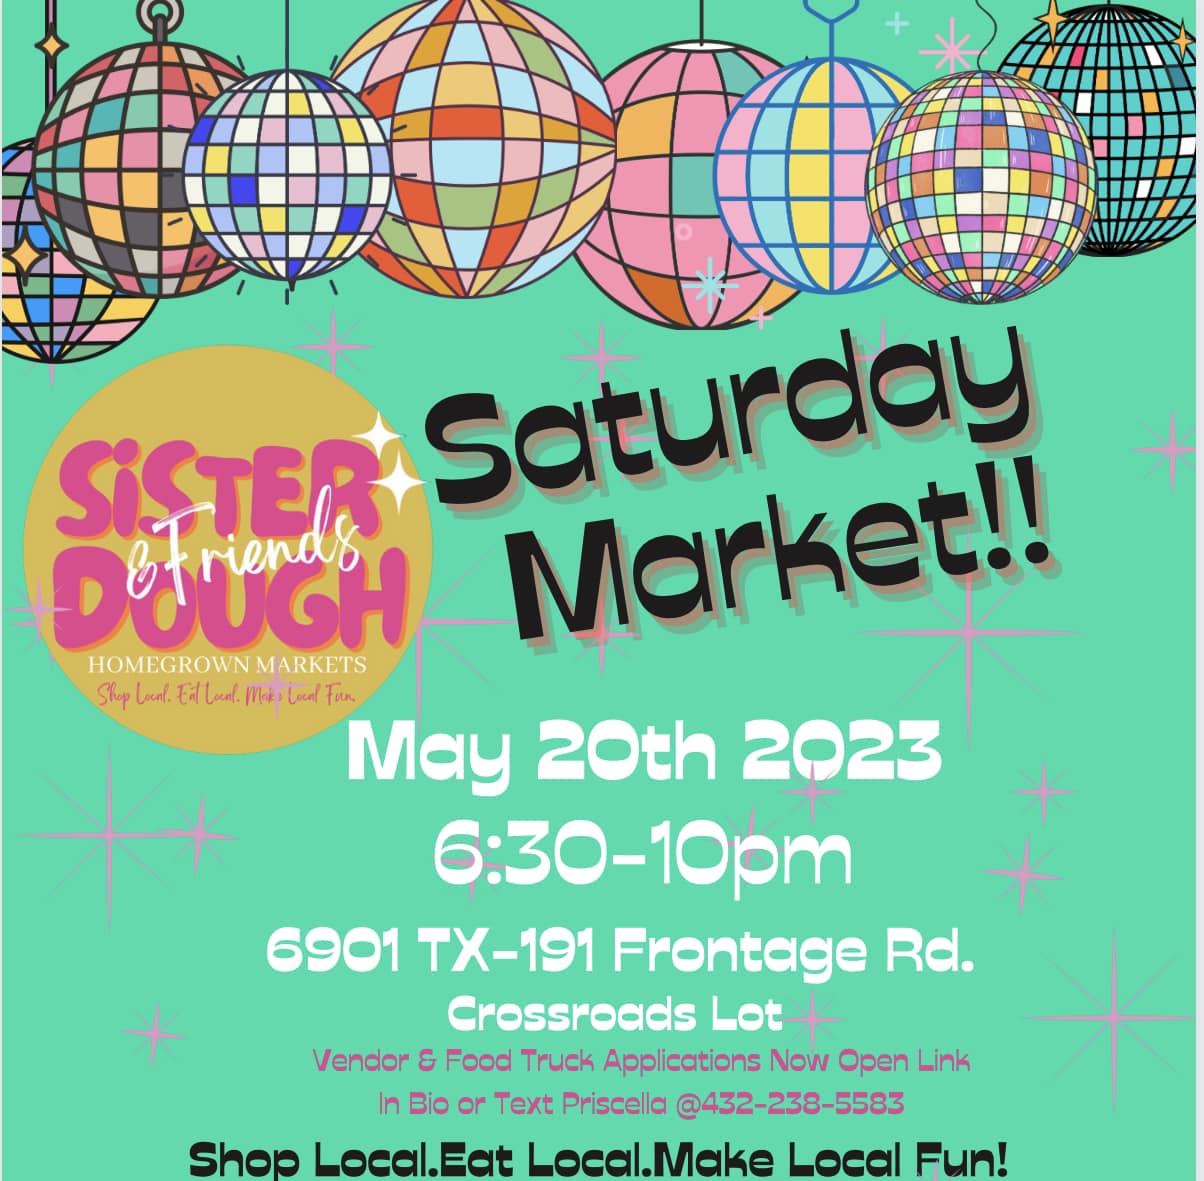 Sister Dough Saturday Market, May 20, 2023